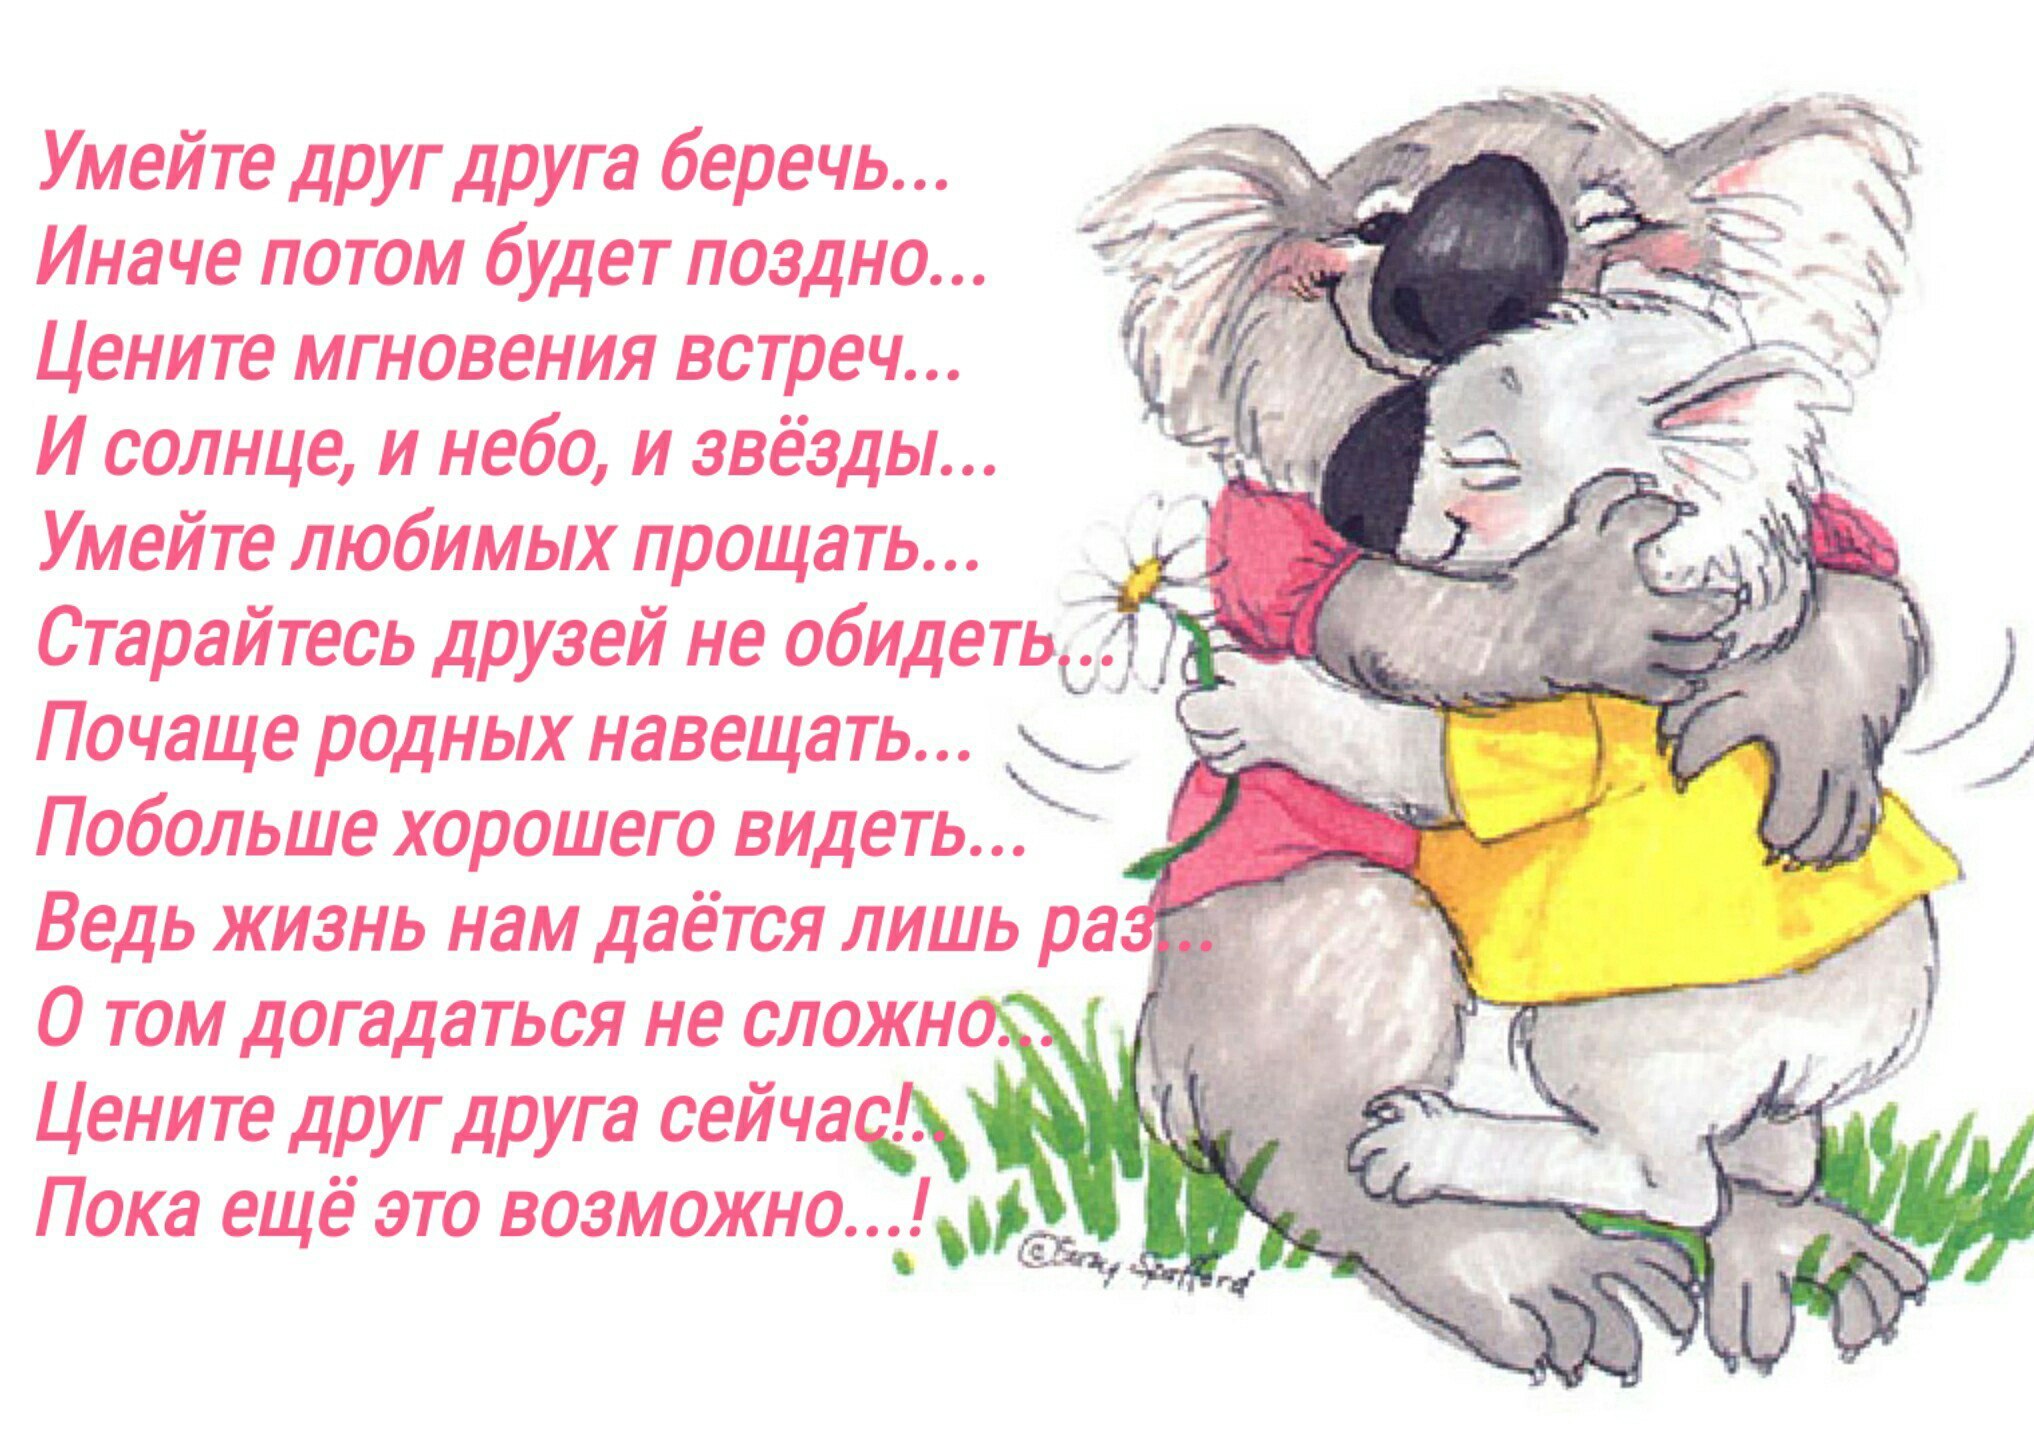 Мой любимый друг россия. Цените и берегите друг друга. Любите и цените друг друга. Стихи: любите, цените. Любите цените и берегите друг друга.